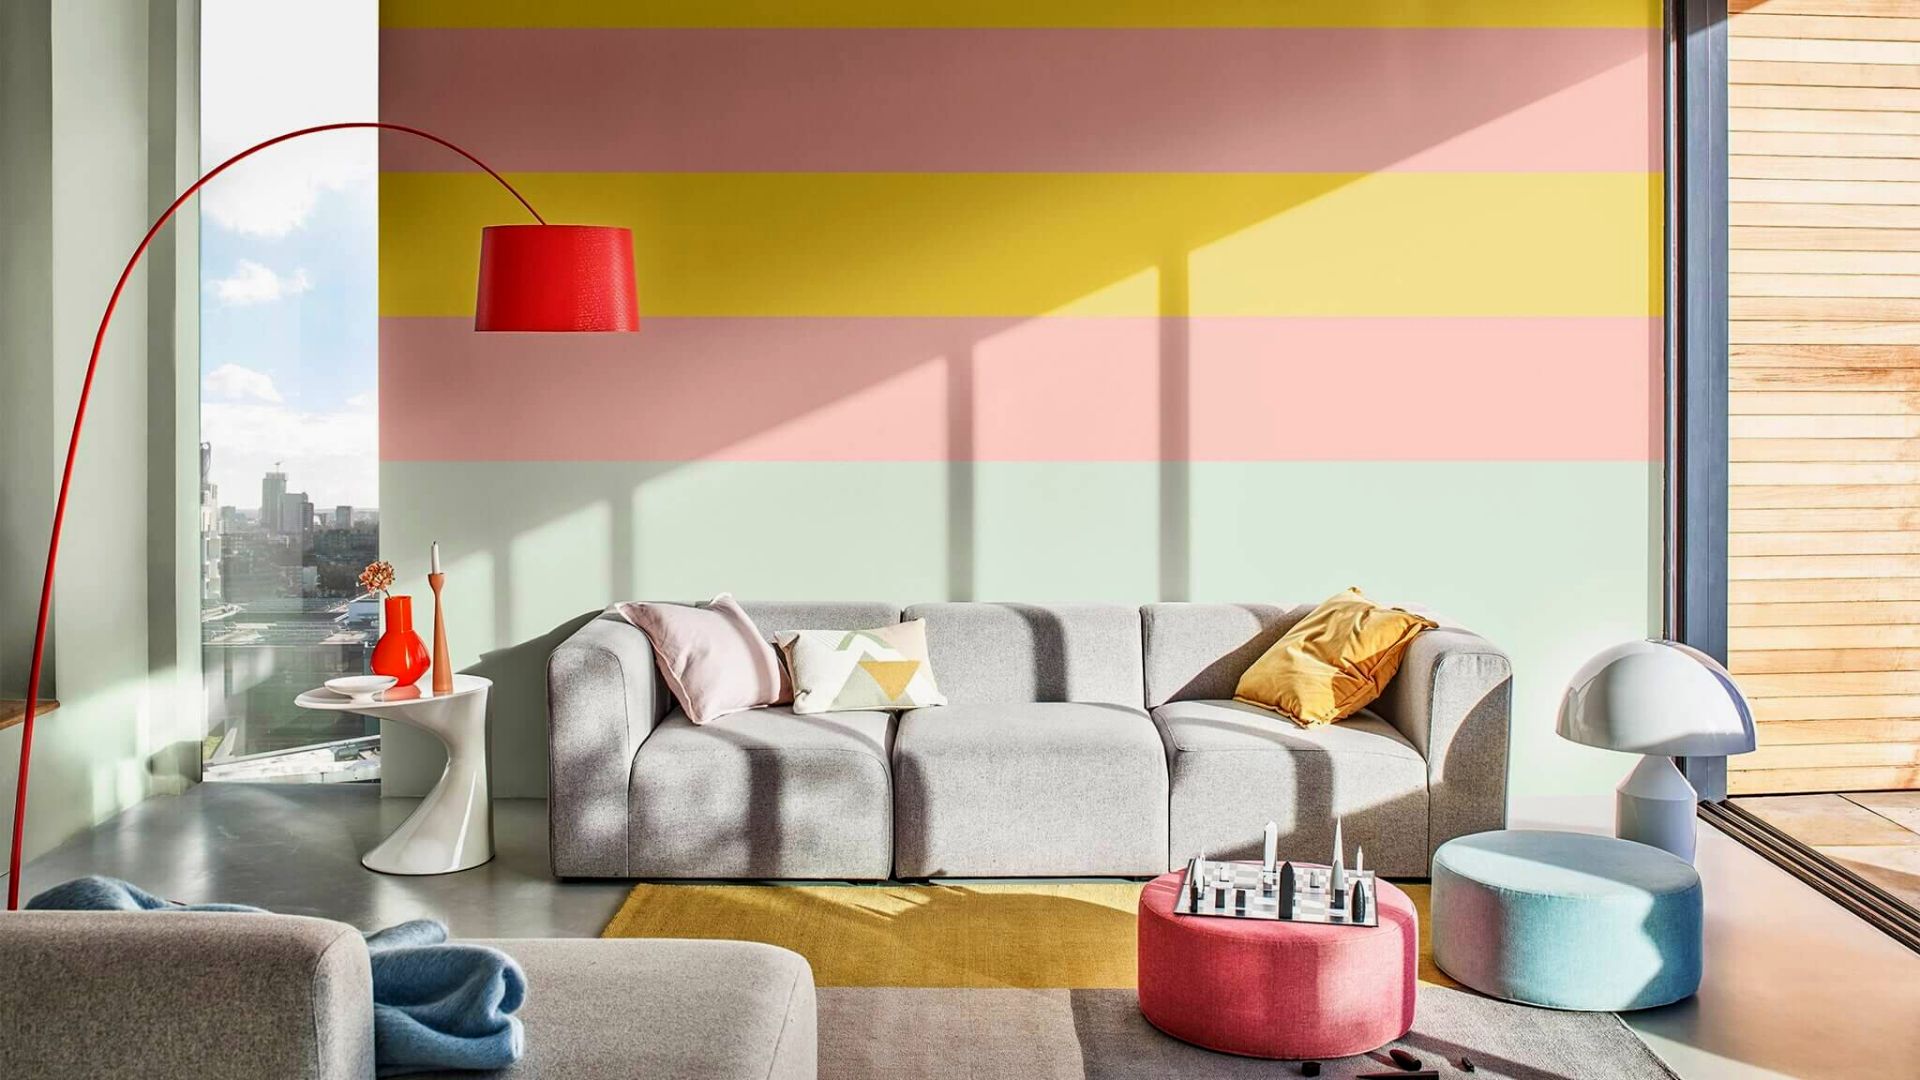 Ứng dụng phối màu tương trong thiết kế nội thất phòng khách hồng - xanh - vàng| Nguồn ảnh: Internet.